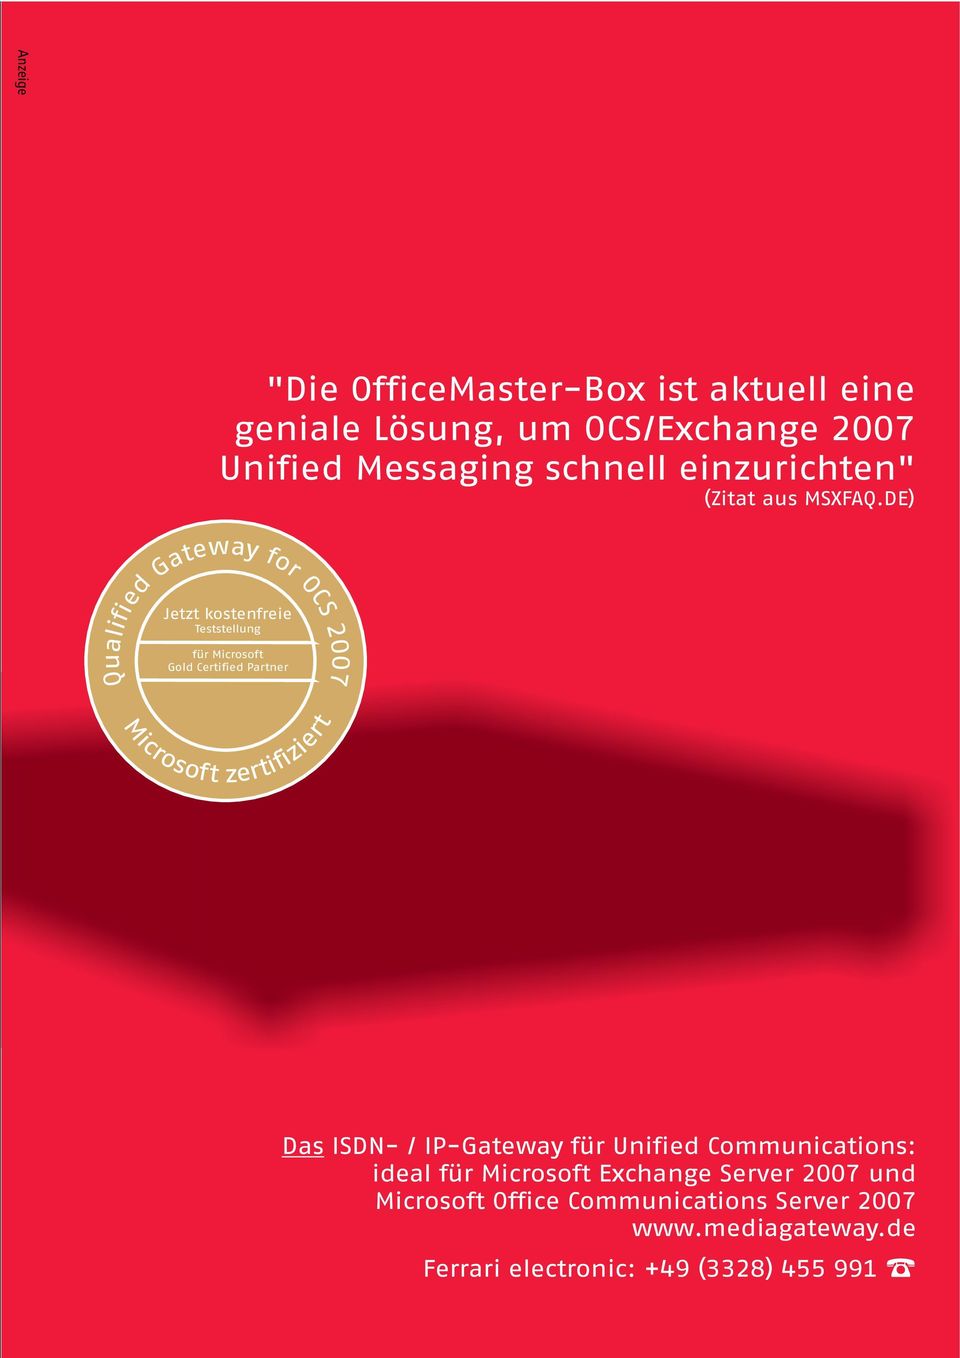 de Ferrari electronic: +49 (3328) 455 991 Anzeige "Die OfficeMaster-Box ist aktuell eine geniale Lösung, um